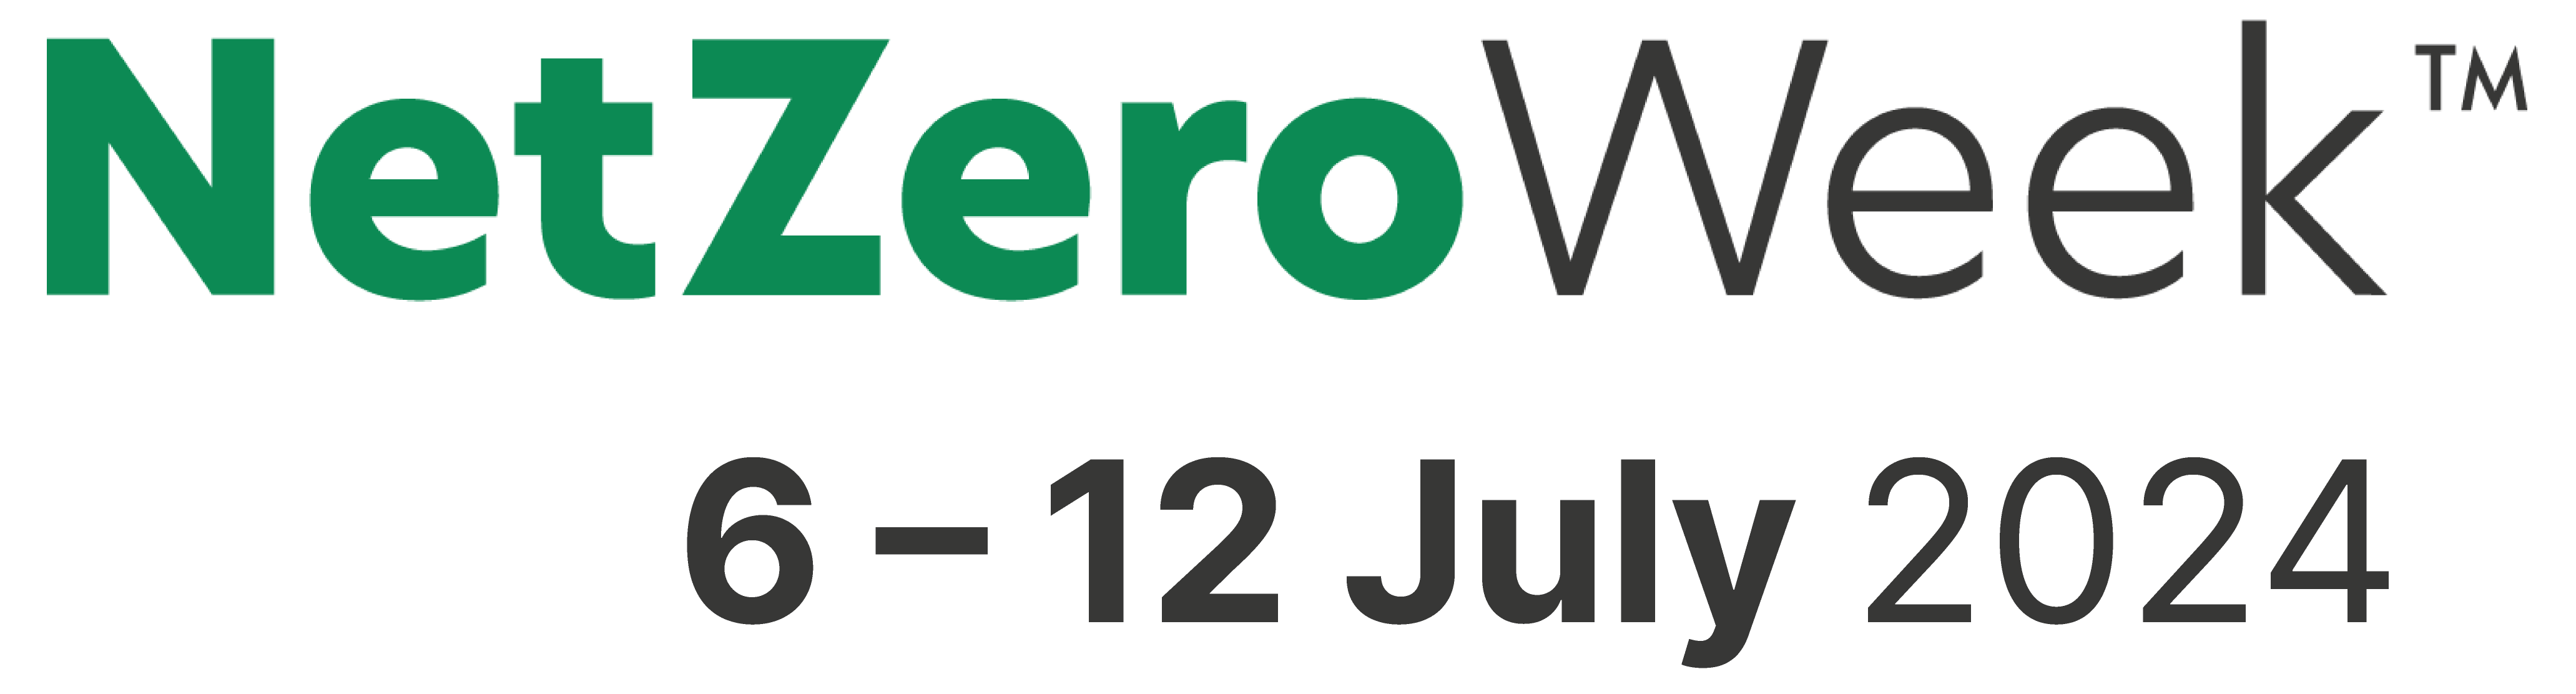 Net Zero Week 2024 logo